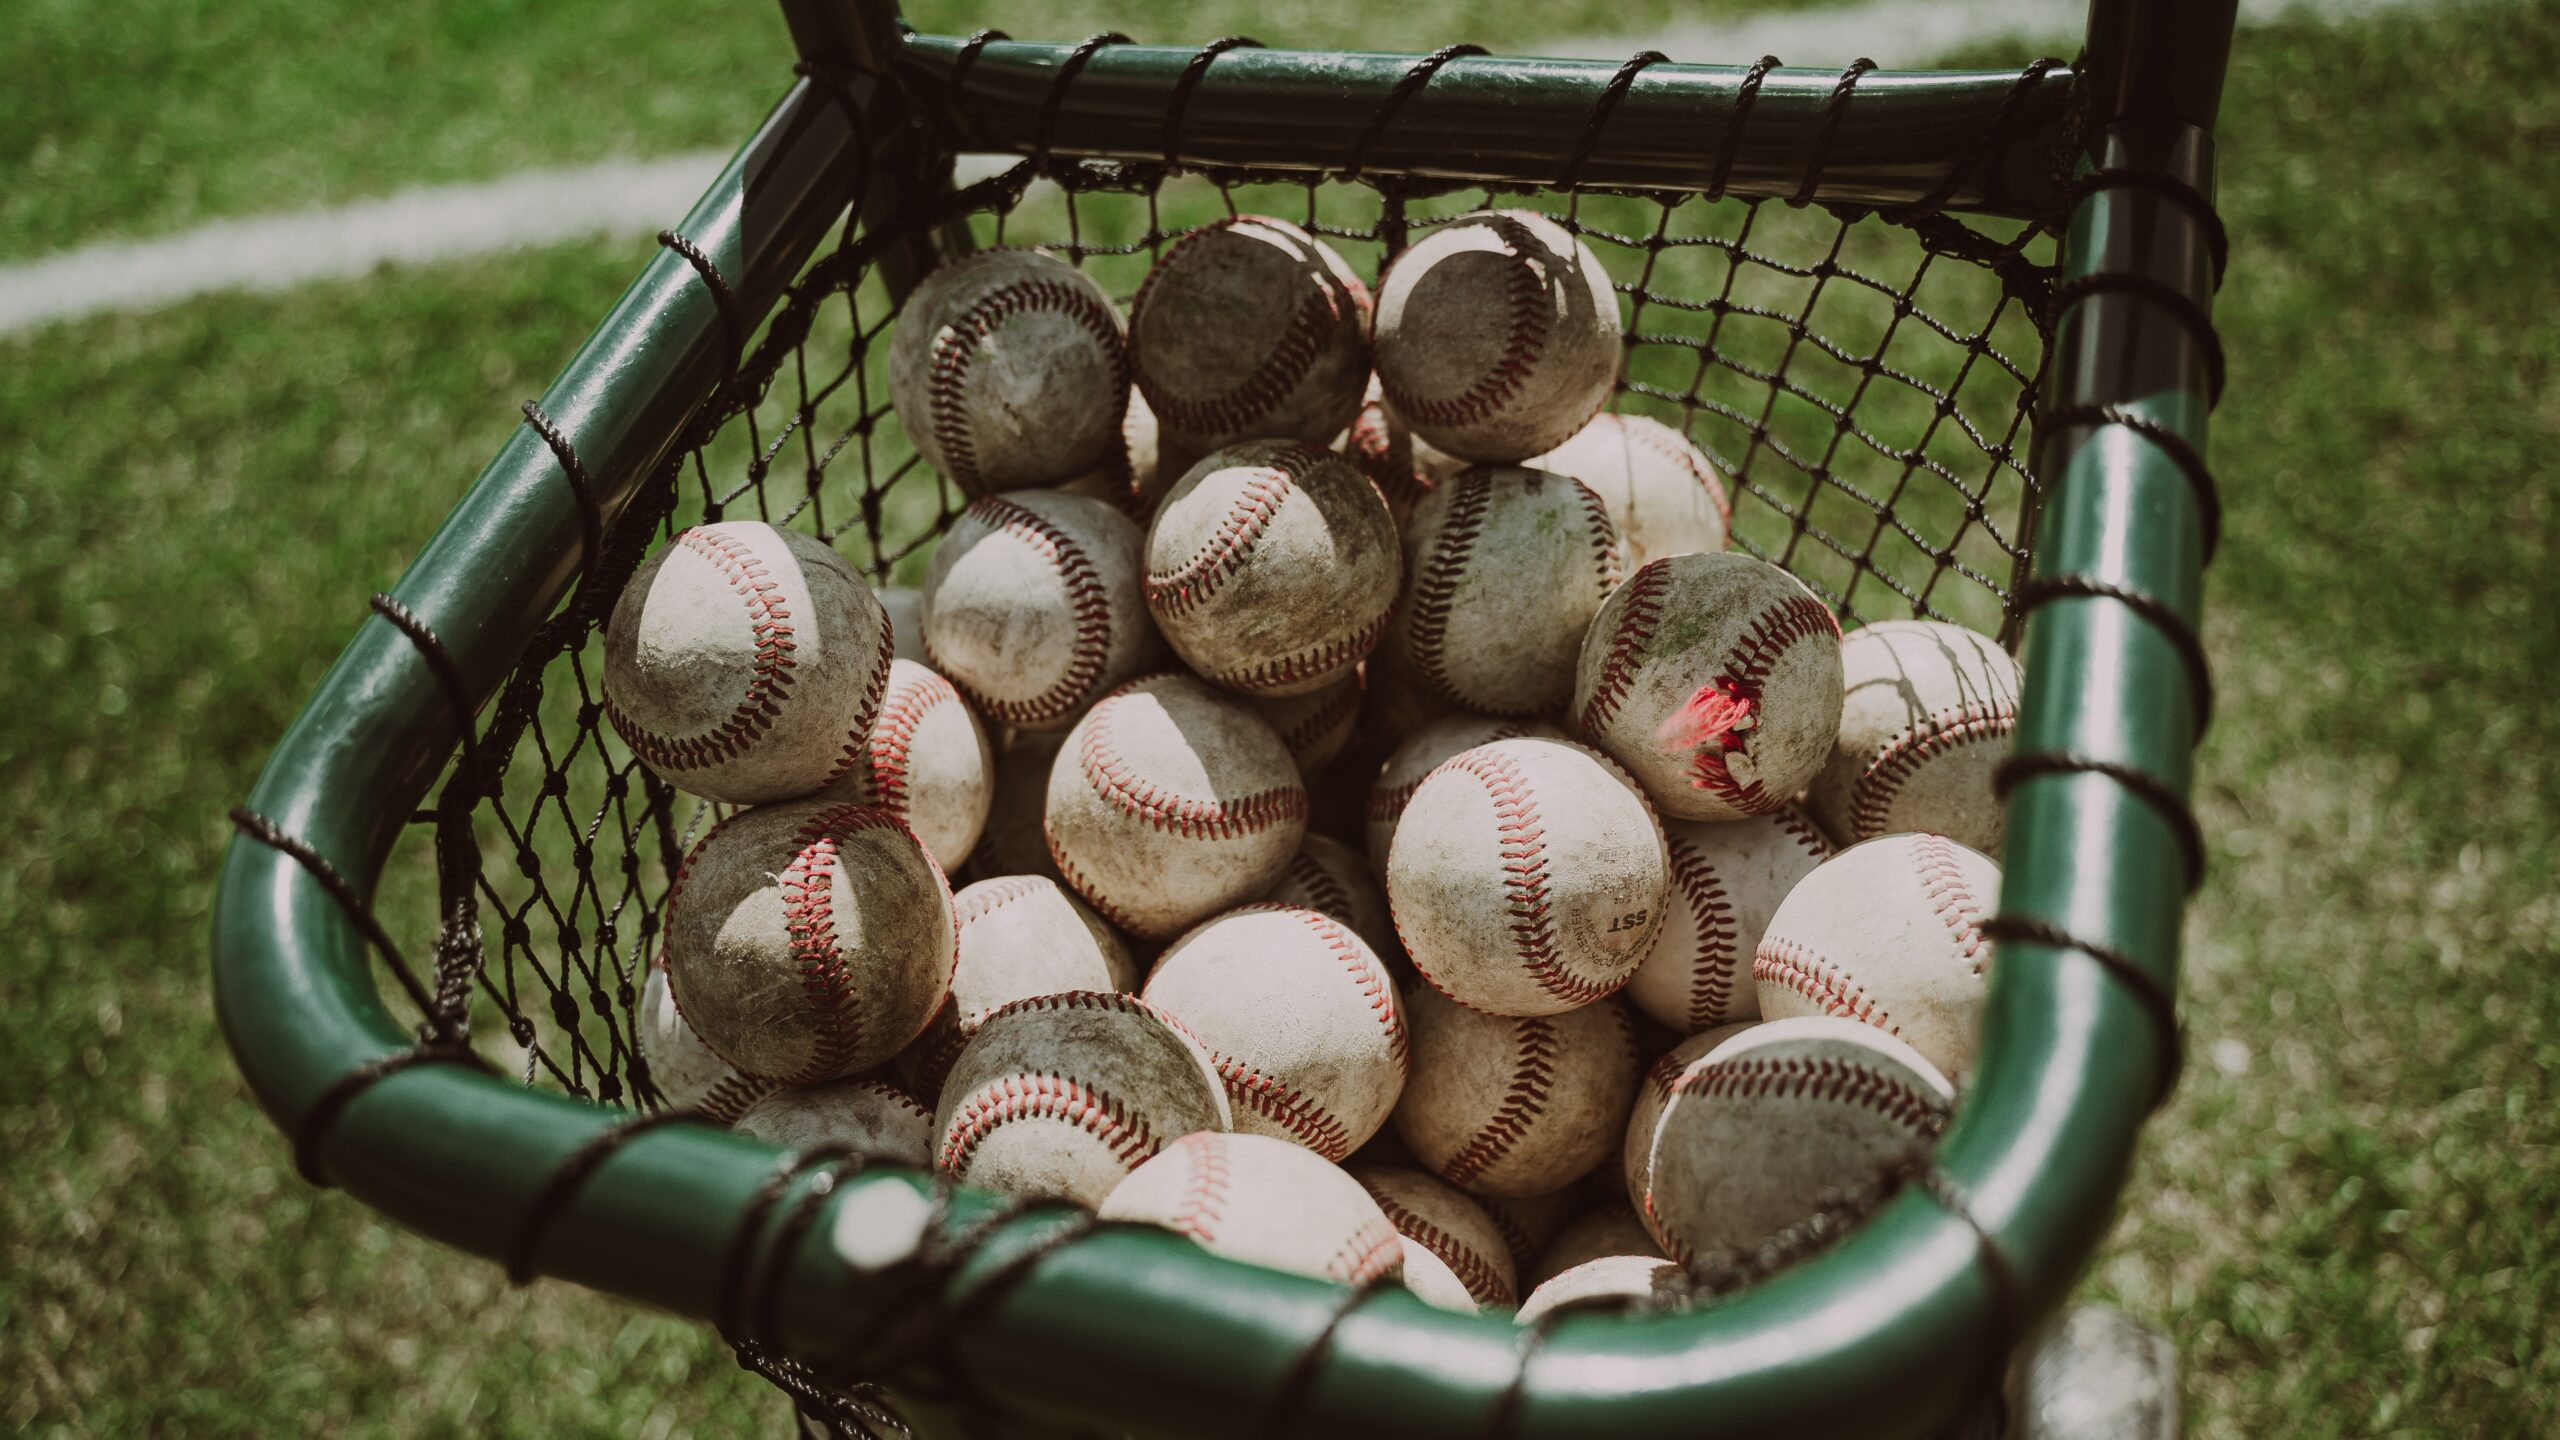 Basket full of baseballs